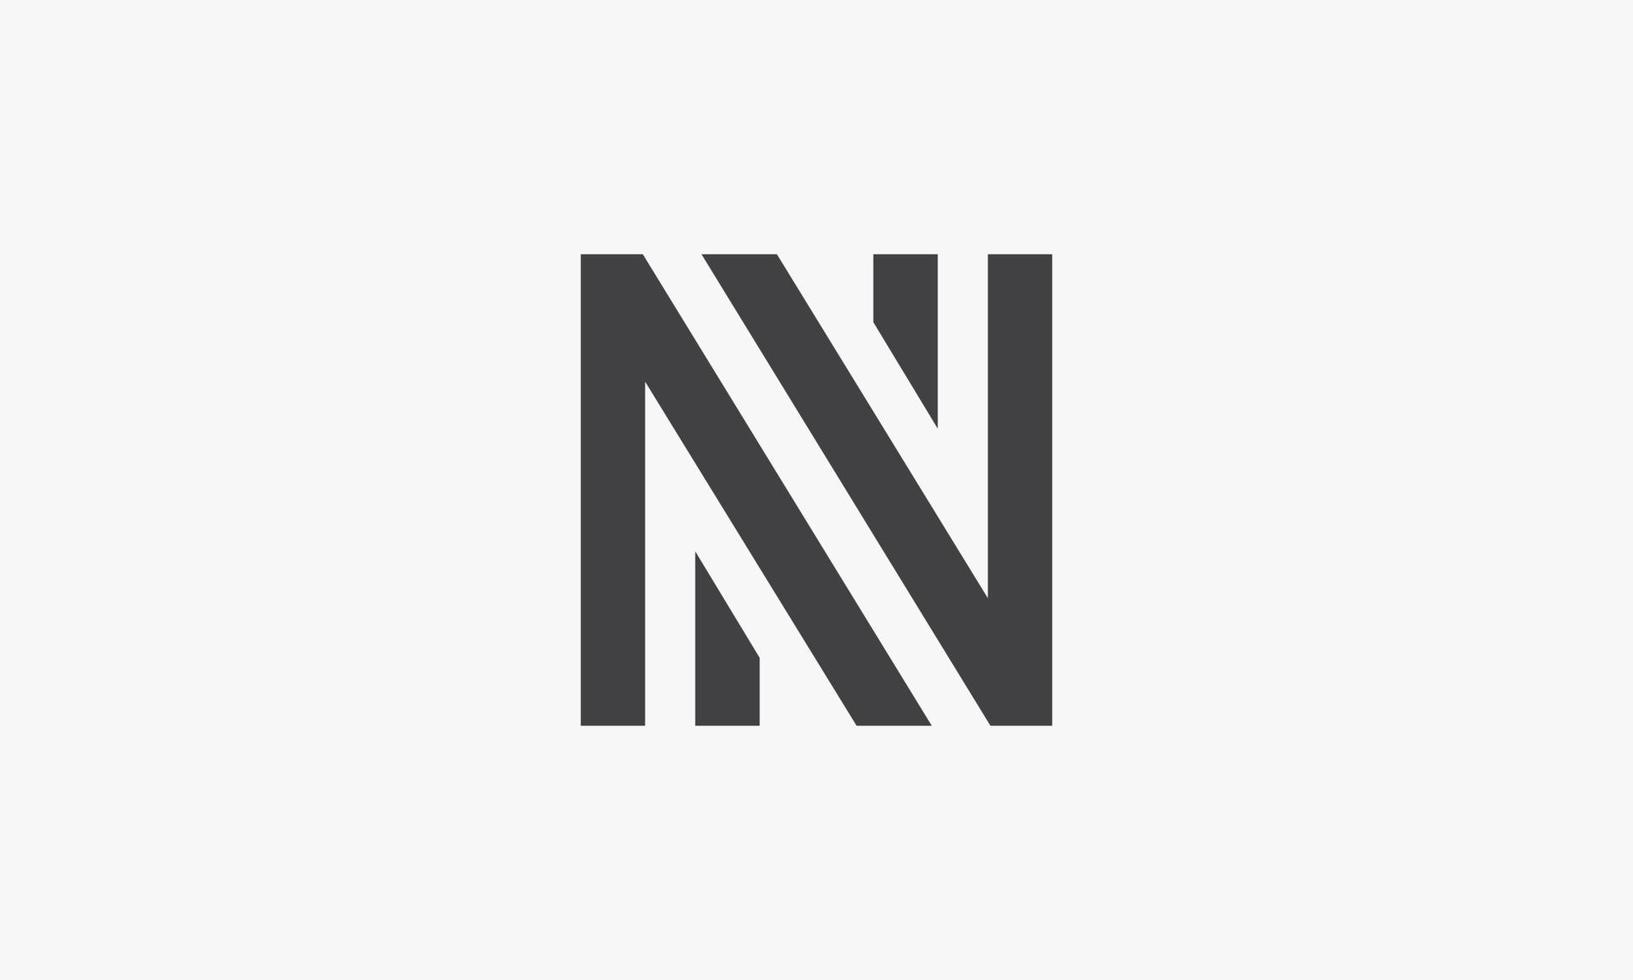 linje bokstaven n eller nn logotyp isolerad på vit bakgrund. vektor